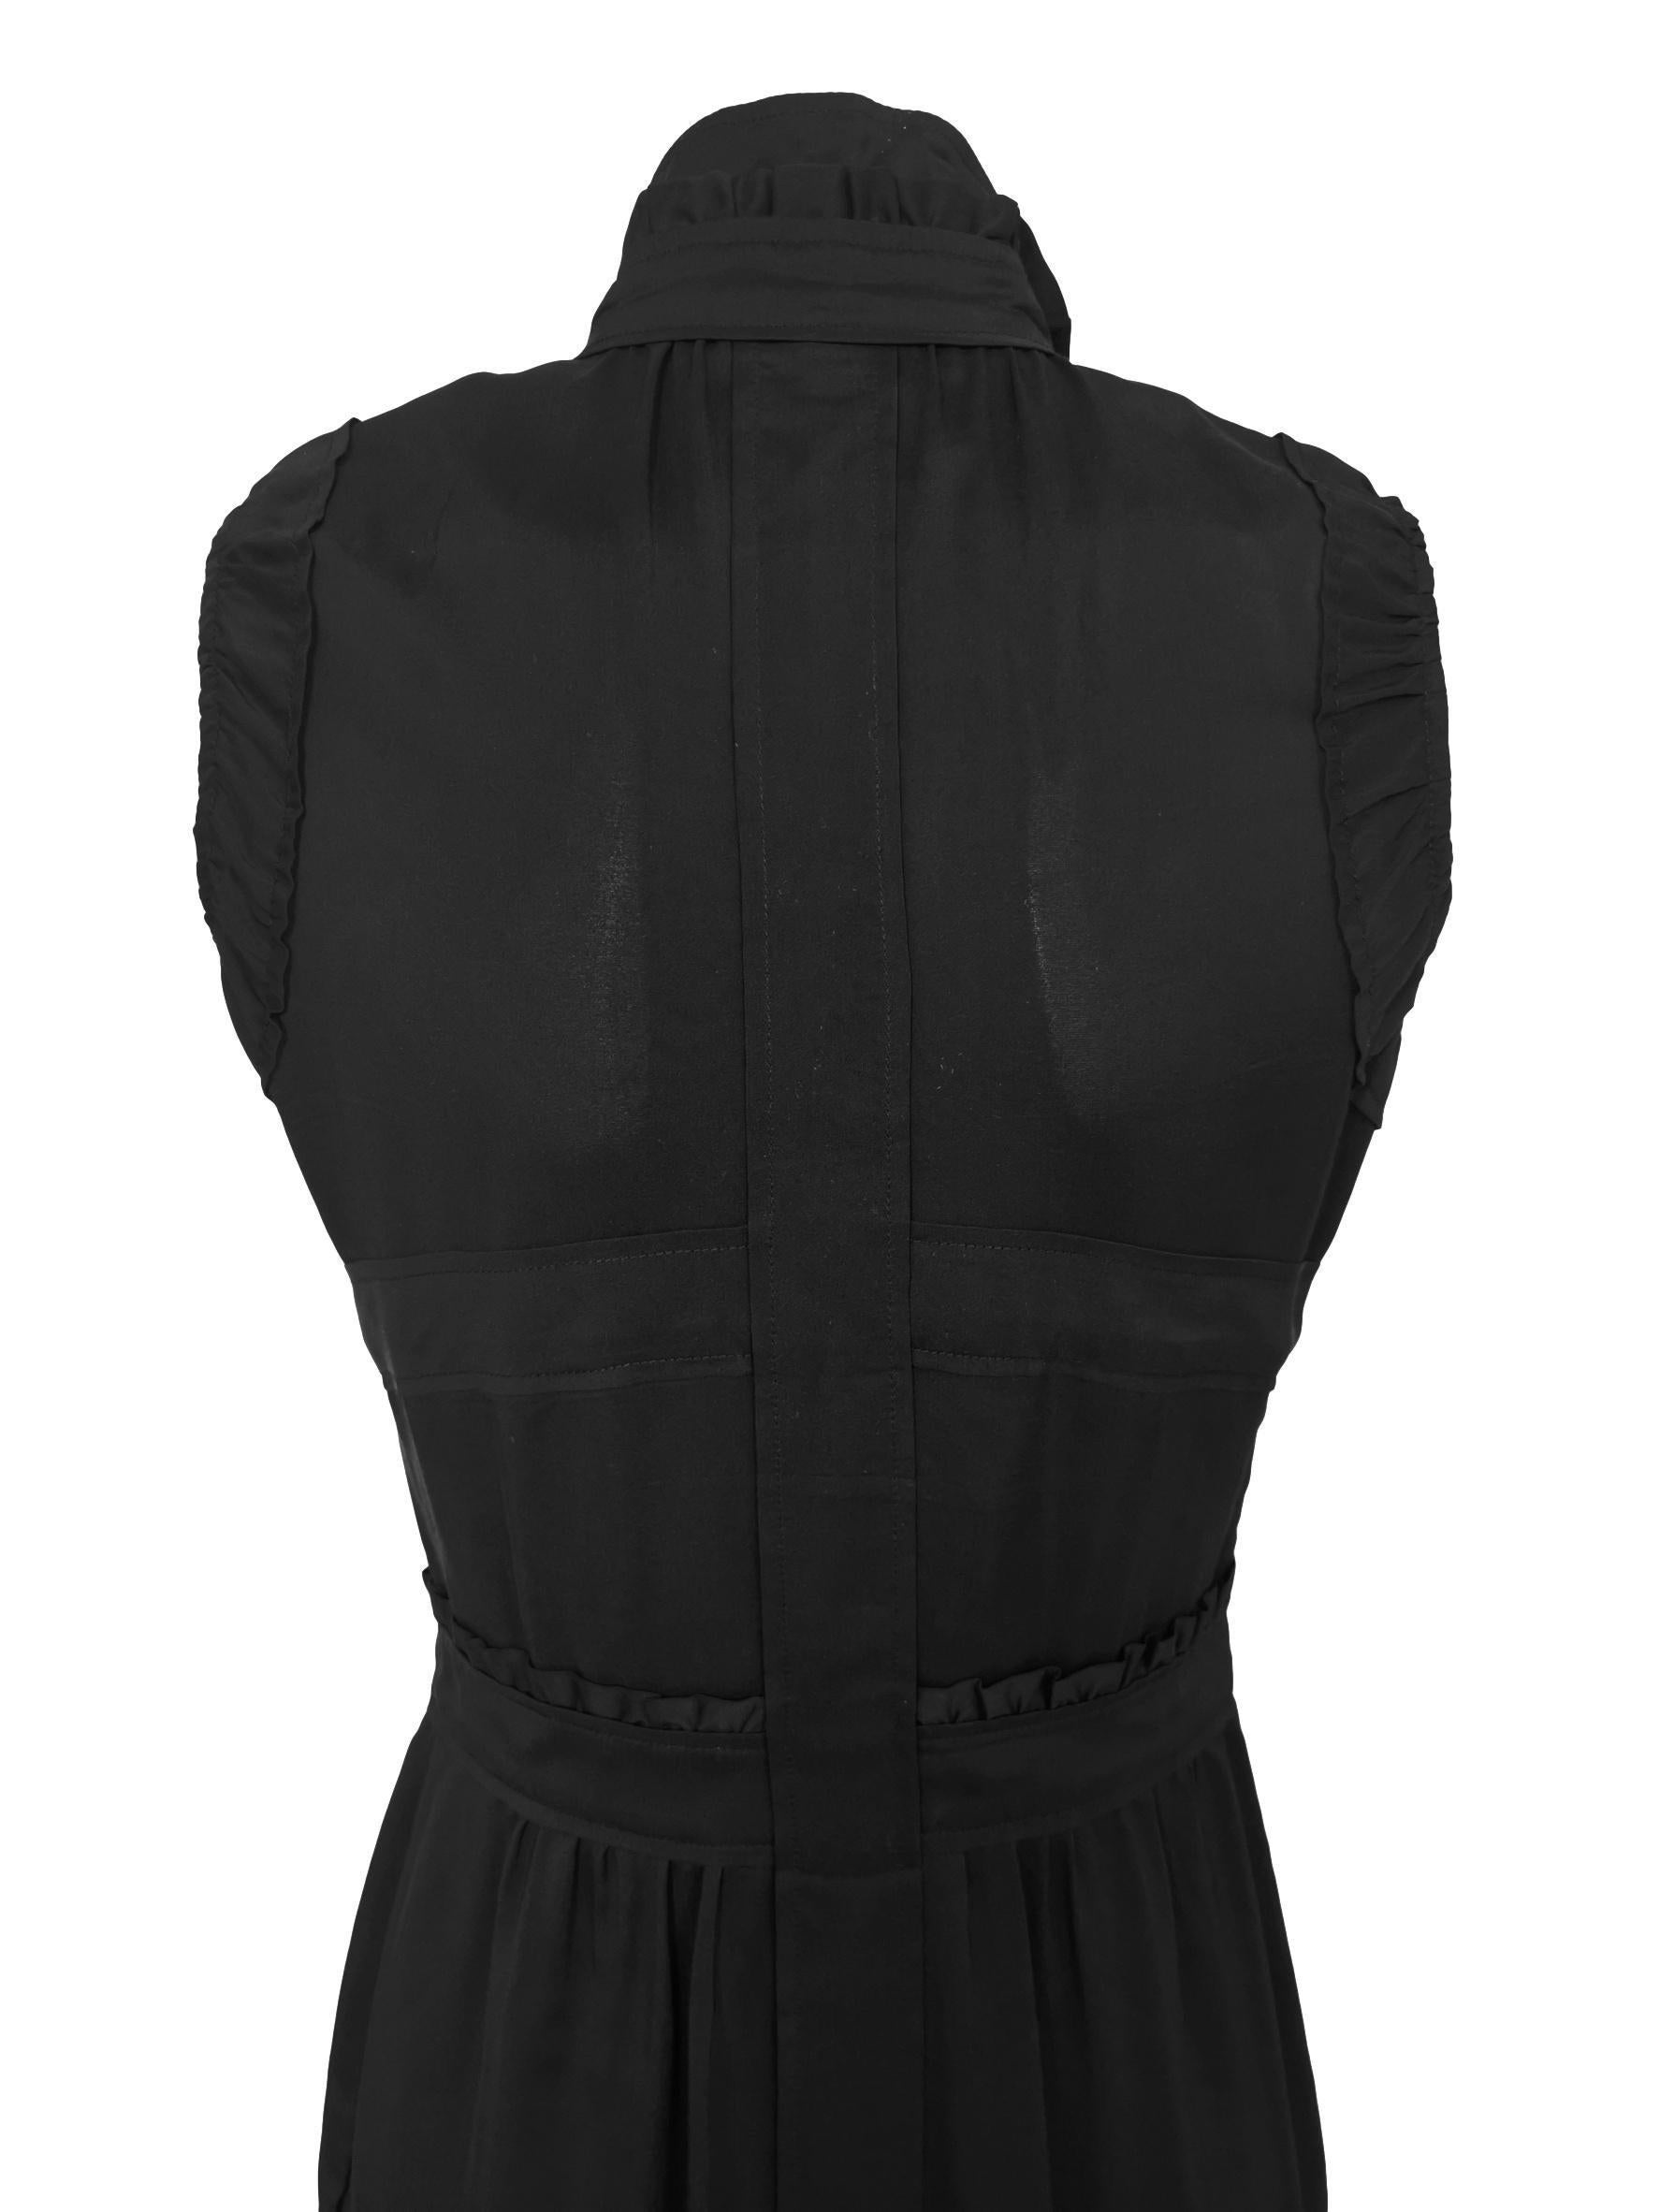 Yves Saint Laurent Tom Ford Silk Slip Dress For Sale 5